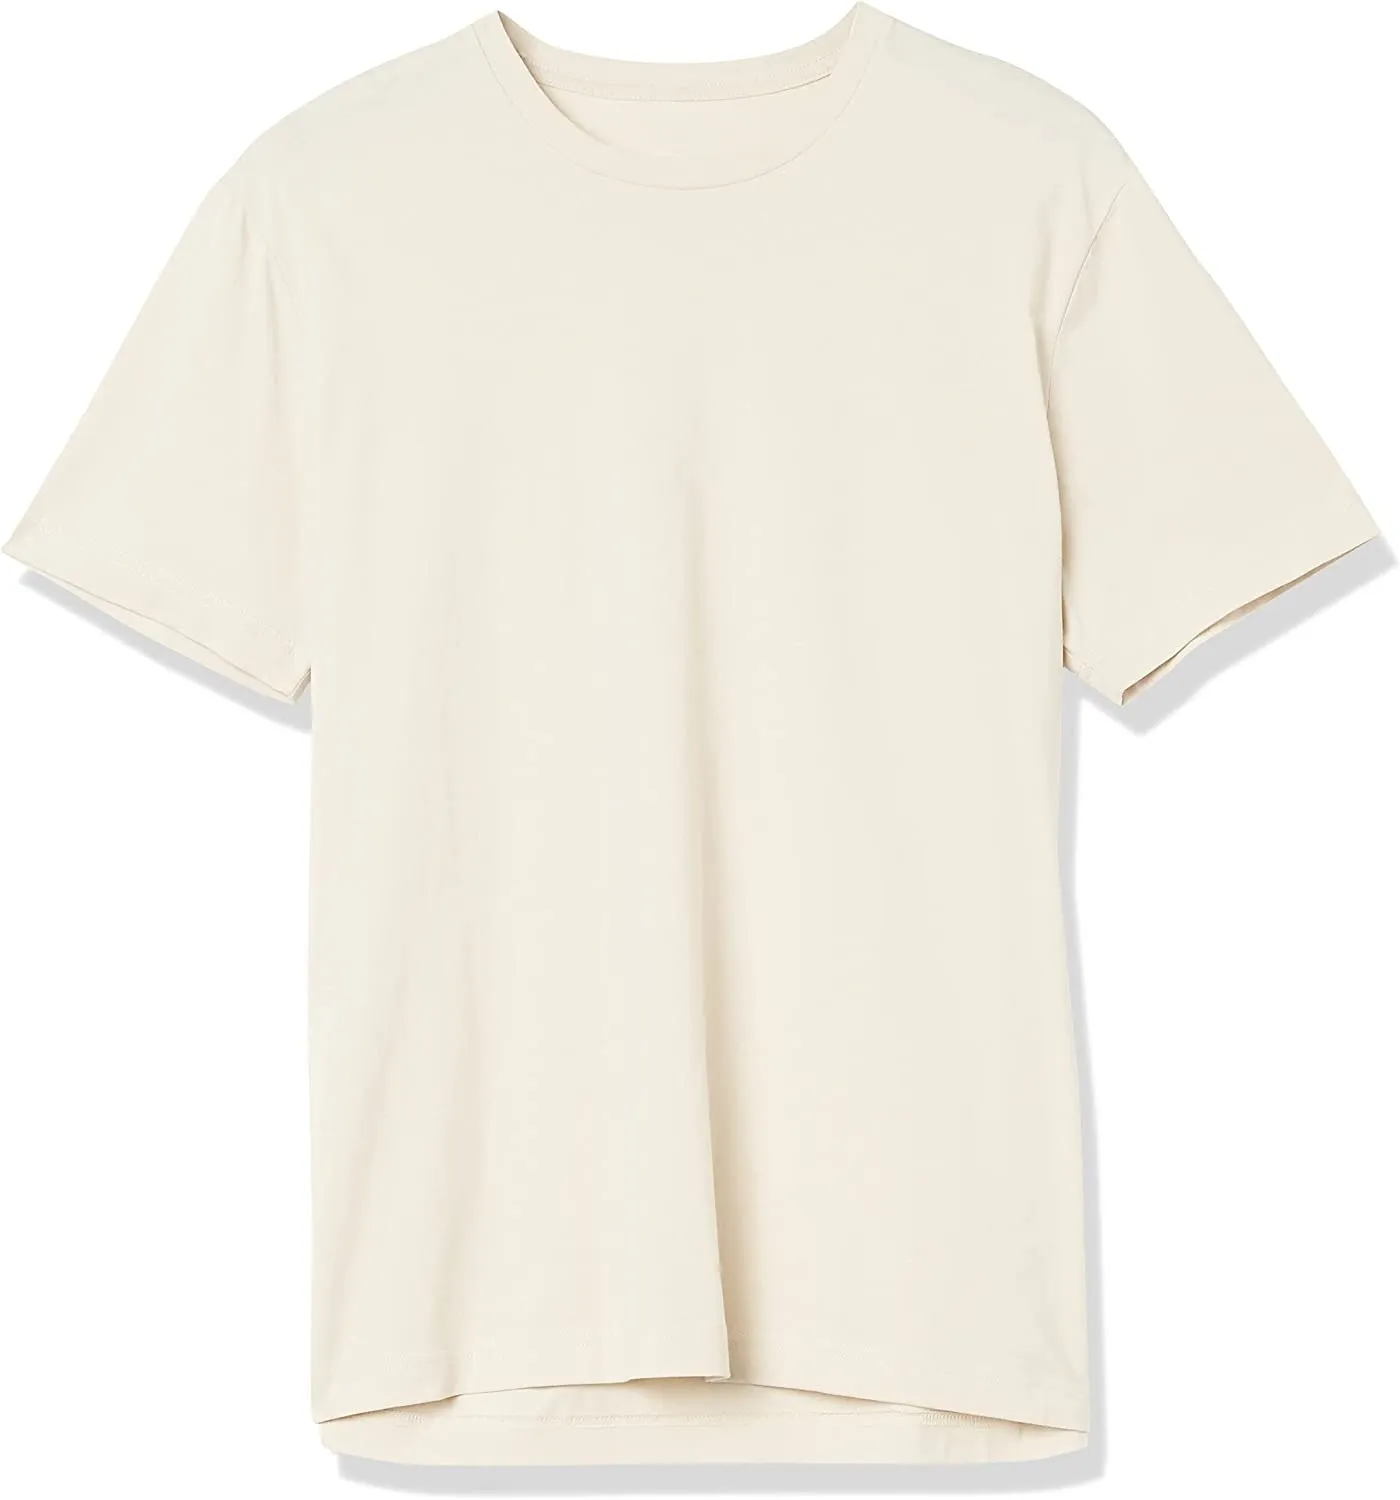 Ropa de moda 100% algodón camisa de hombre Polo bordado poliéster de alta calidad hombres cantidad OEM personalizado ODM logo camisetas